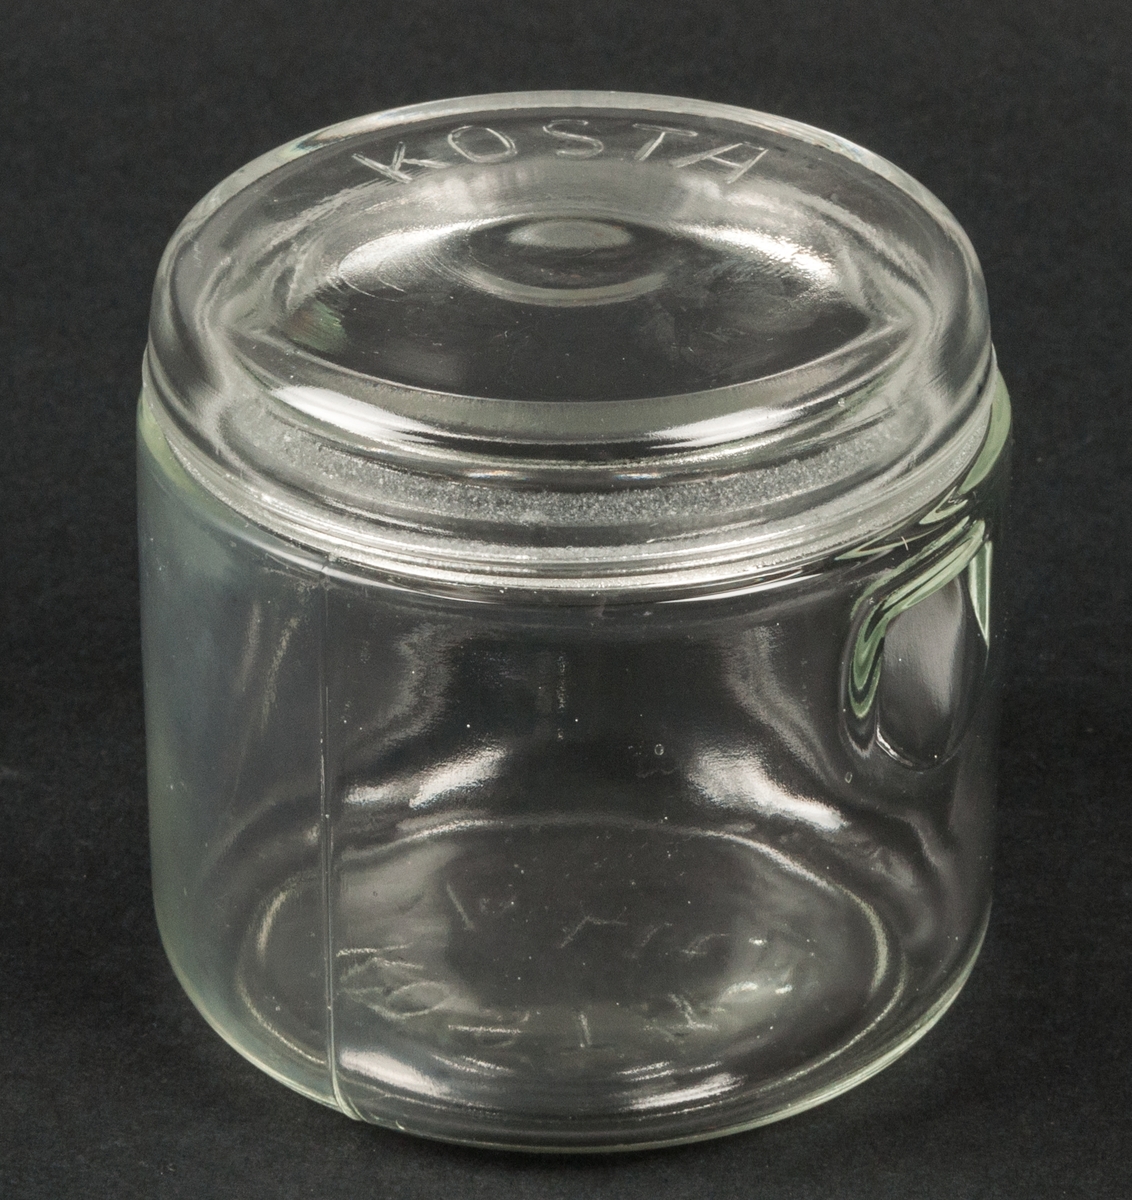 Tre konserveringsglas med lock. 1/4 liter.
Glas. 2 fördjupningar upptill på sidan. På undersidan märkt "KOSTA 1/4 Lit"